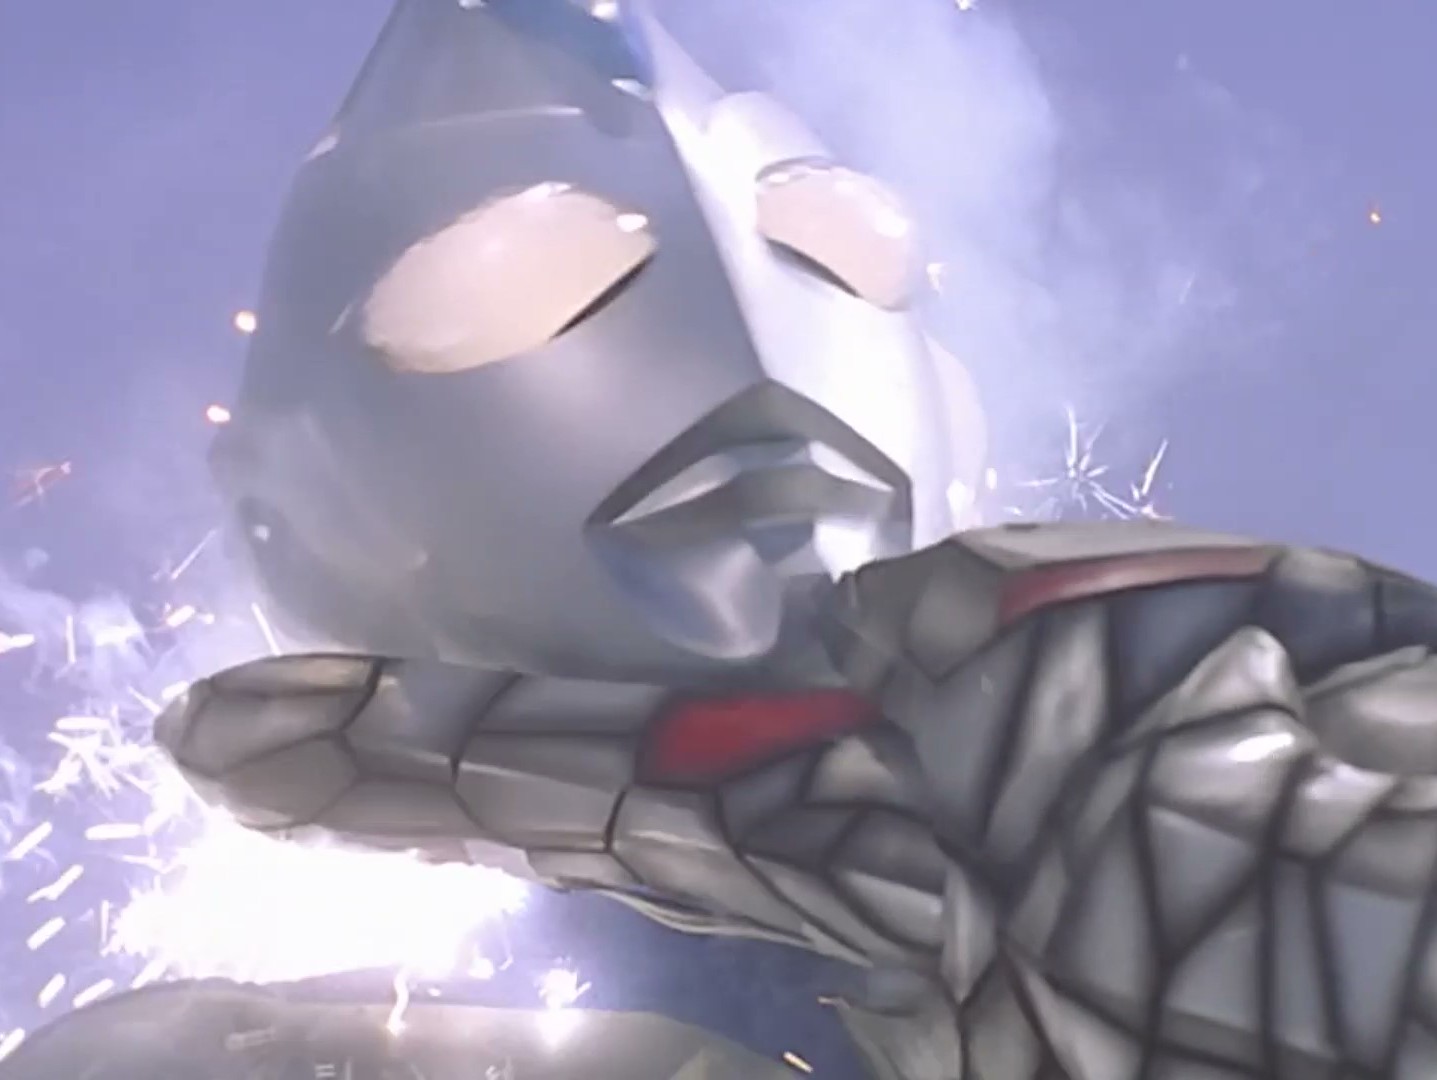 Ultraman 05 - Dominating Ultraman Dyna